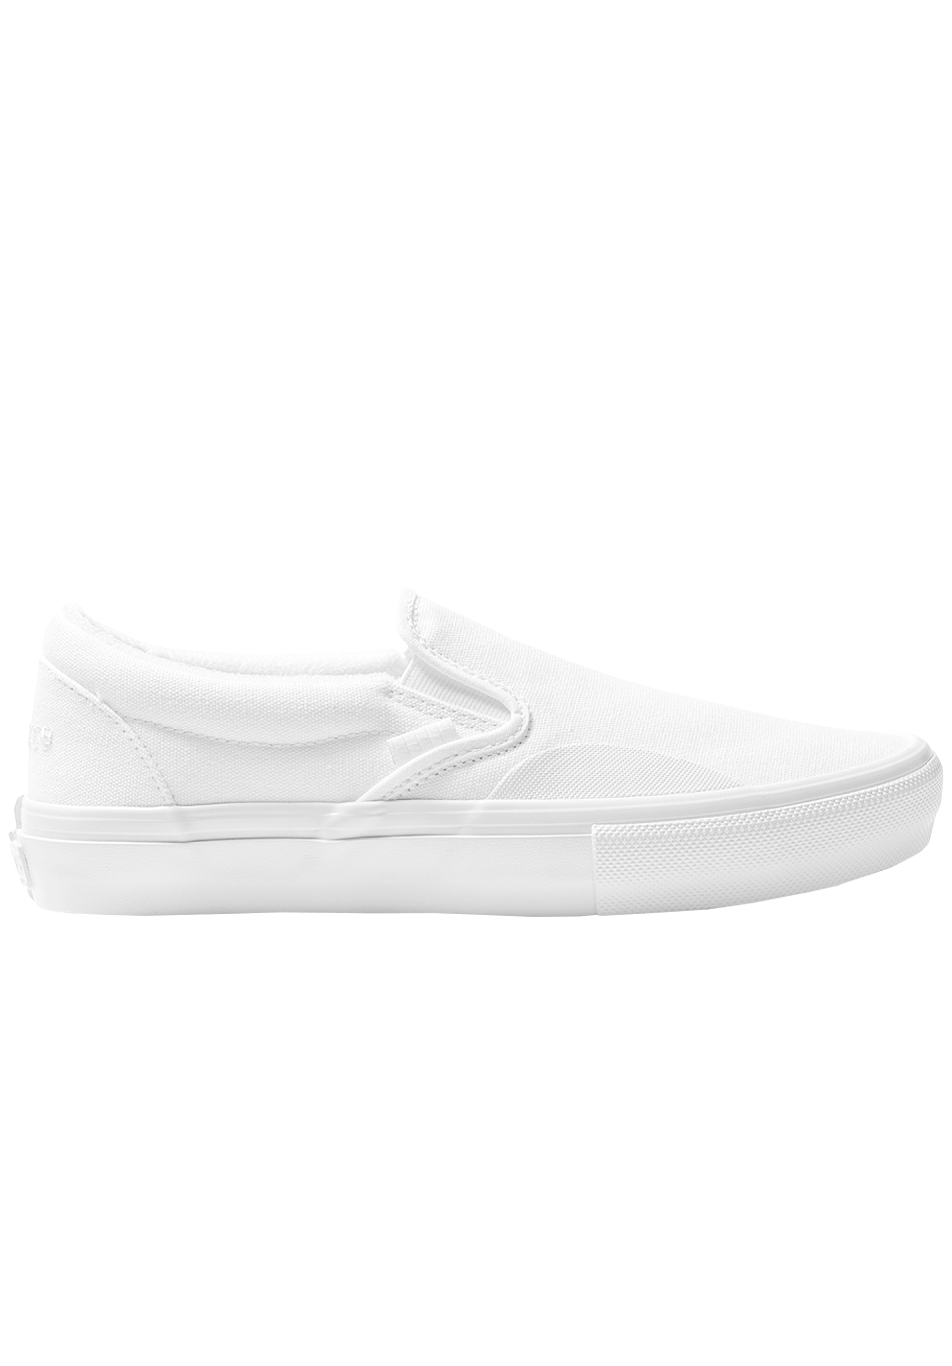 Chaussures Vans Skate x LovenSkate Skate Slip-On Blanc EN LIGNE UNIQUEMENT